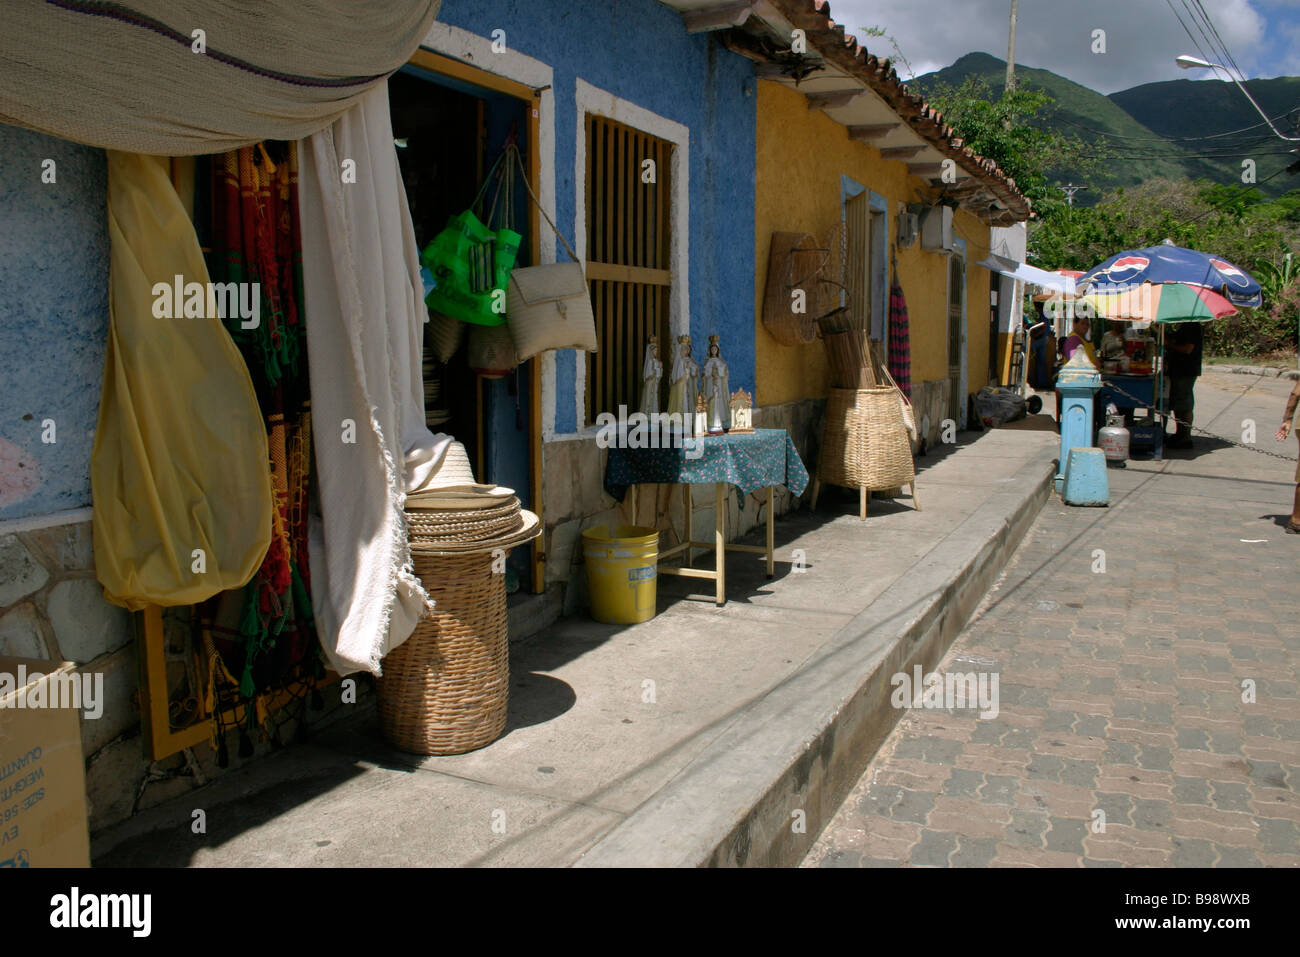 Street in town. Rows of terraced houses.  Shops. Doorways. Goods on display. EL VALLE. ISLA MARGARITA. VENEZUELA. Stock Photo